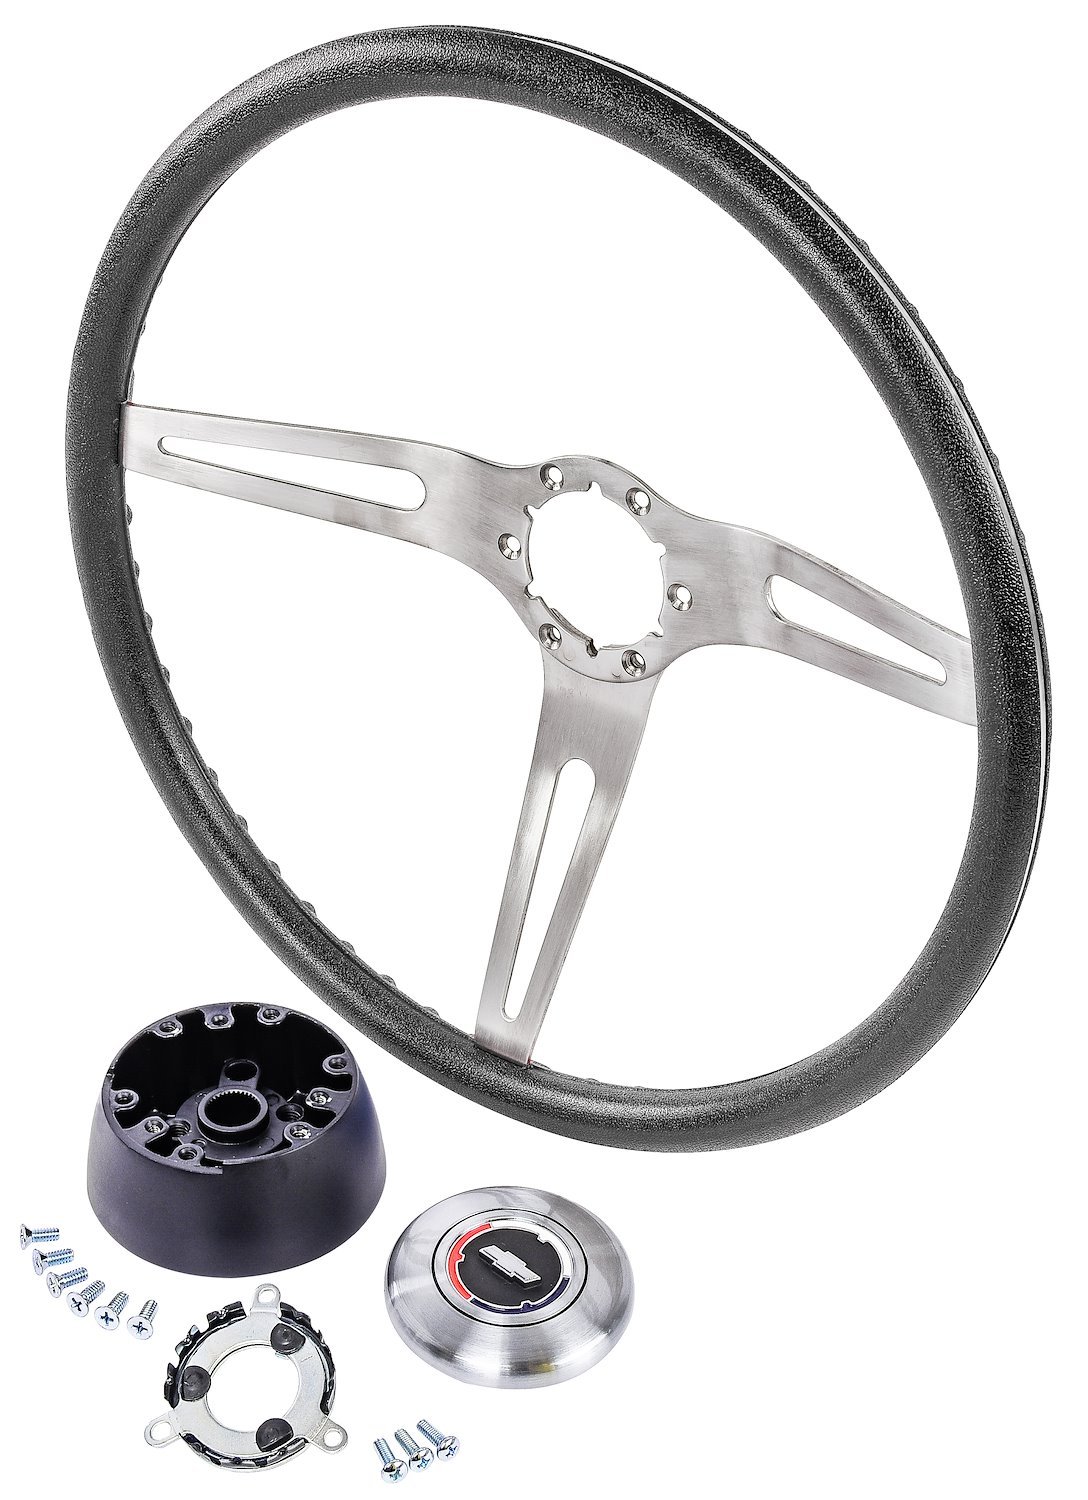 3-Spoke Comfort Grip Steering Wheel Kit Fits Select 1967-1969 Chevrolet Cars & 1960-1975 Chevrolet & GMC Trucks [Black Grip]